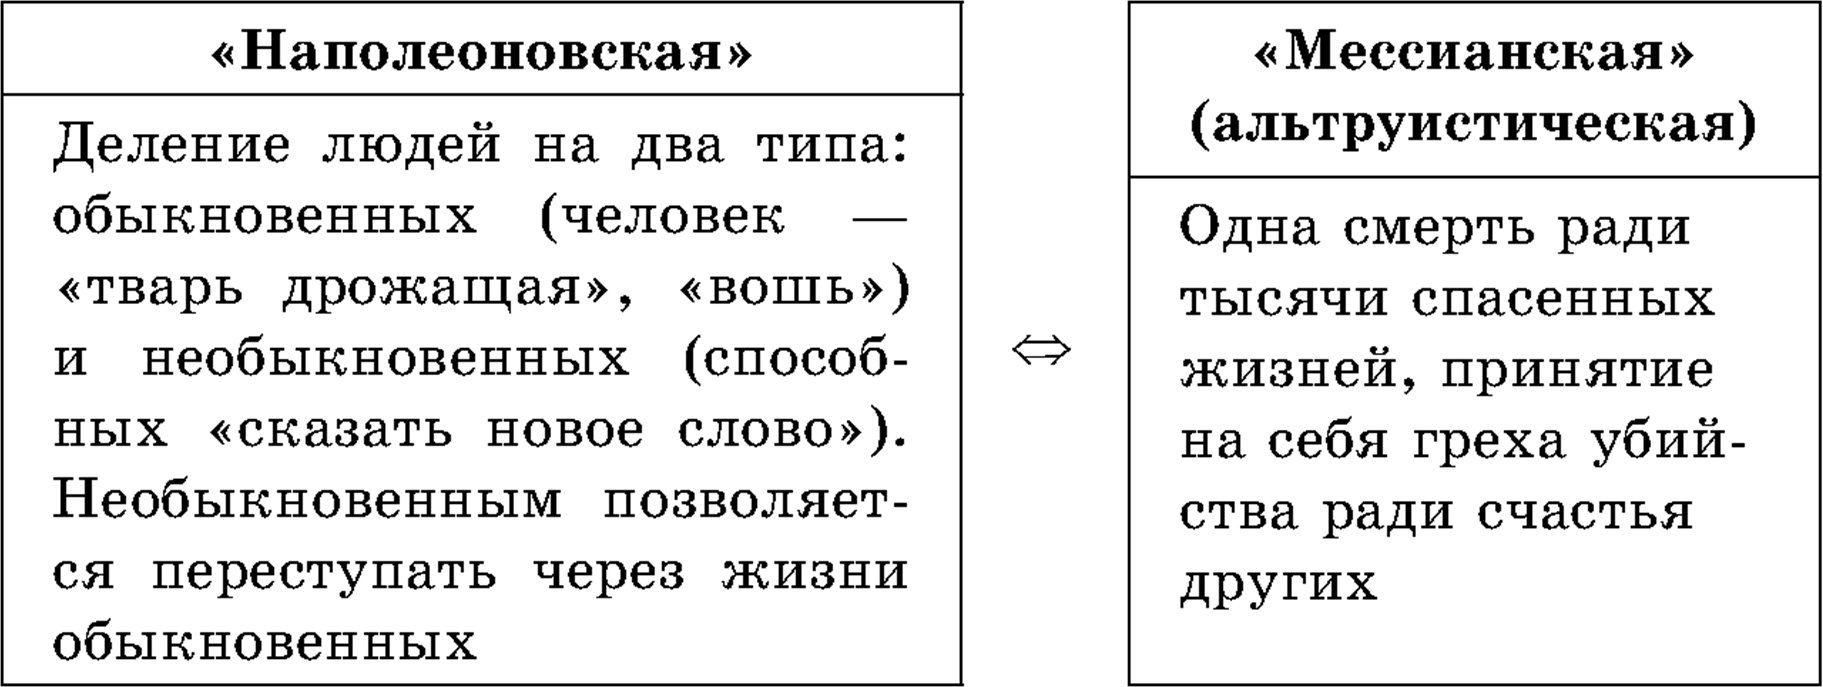 Две стороны теории Раскольникова